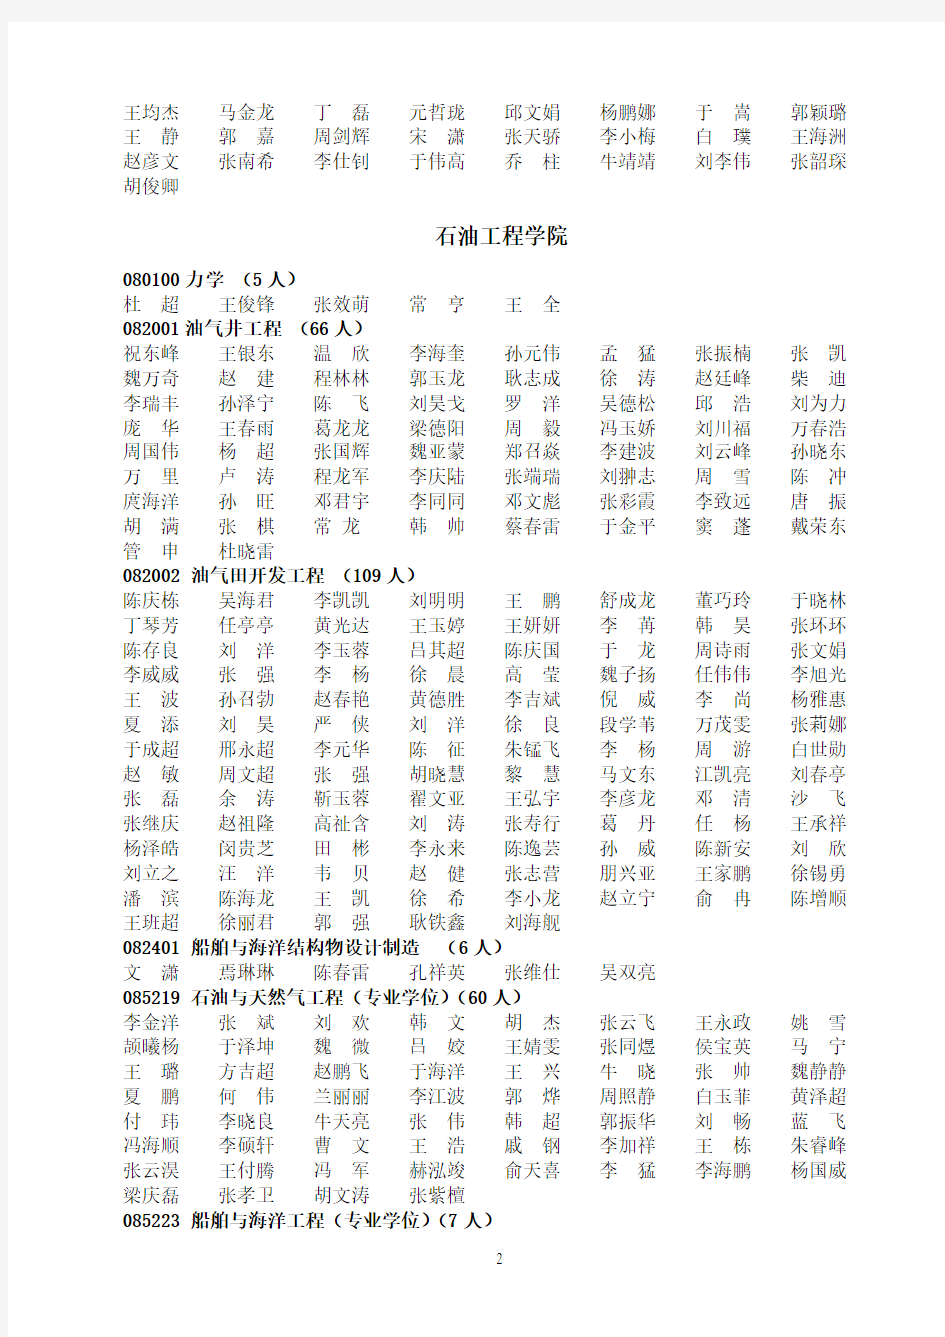 中国石油大学(华东)2012年硕士拟录取名单